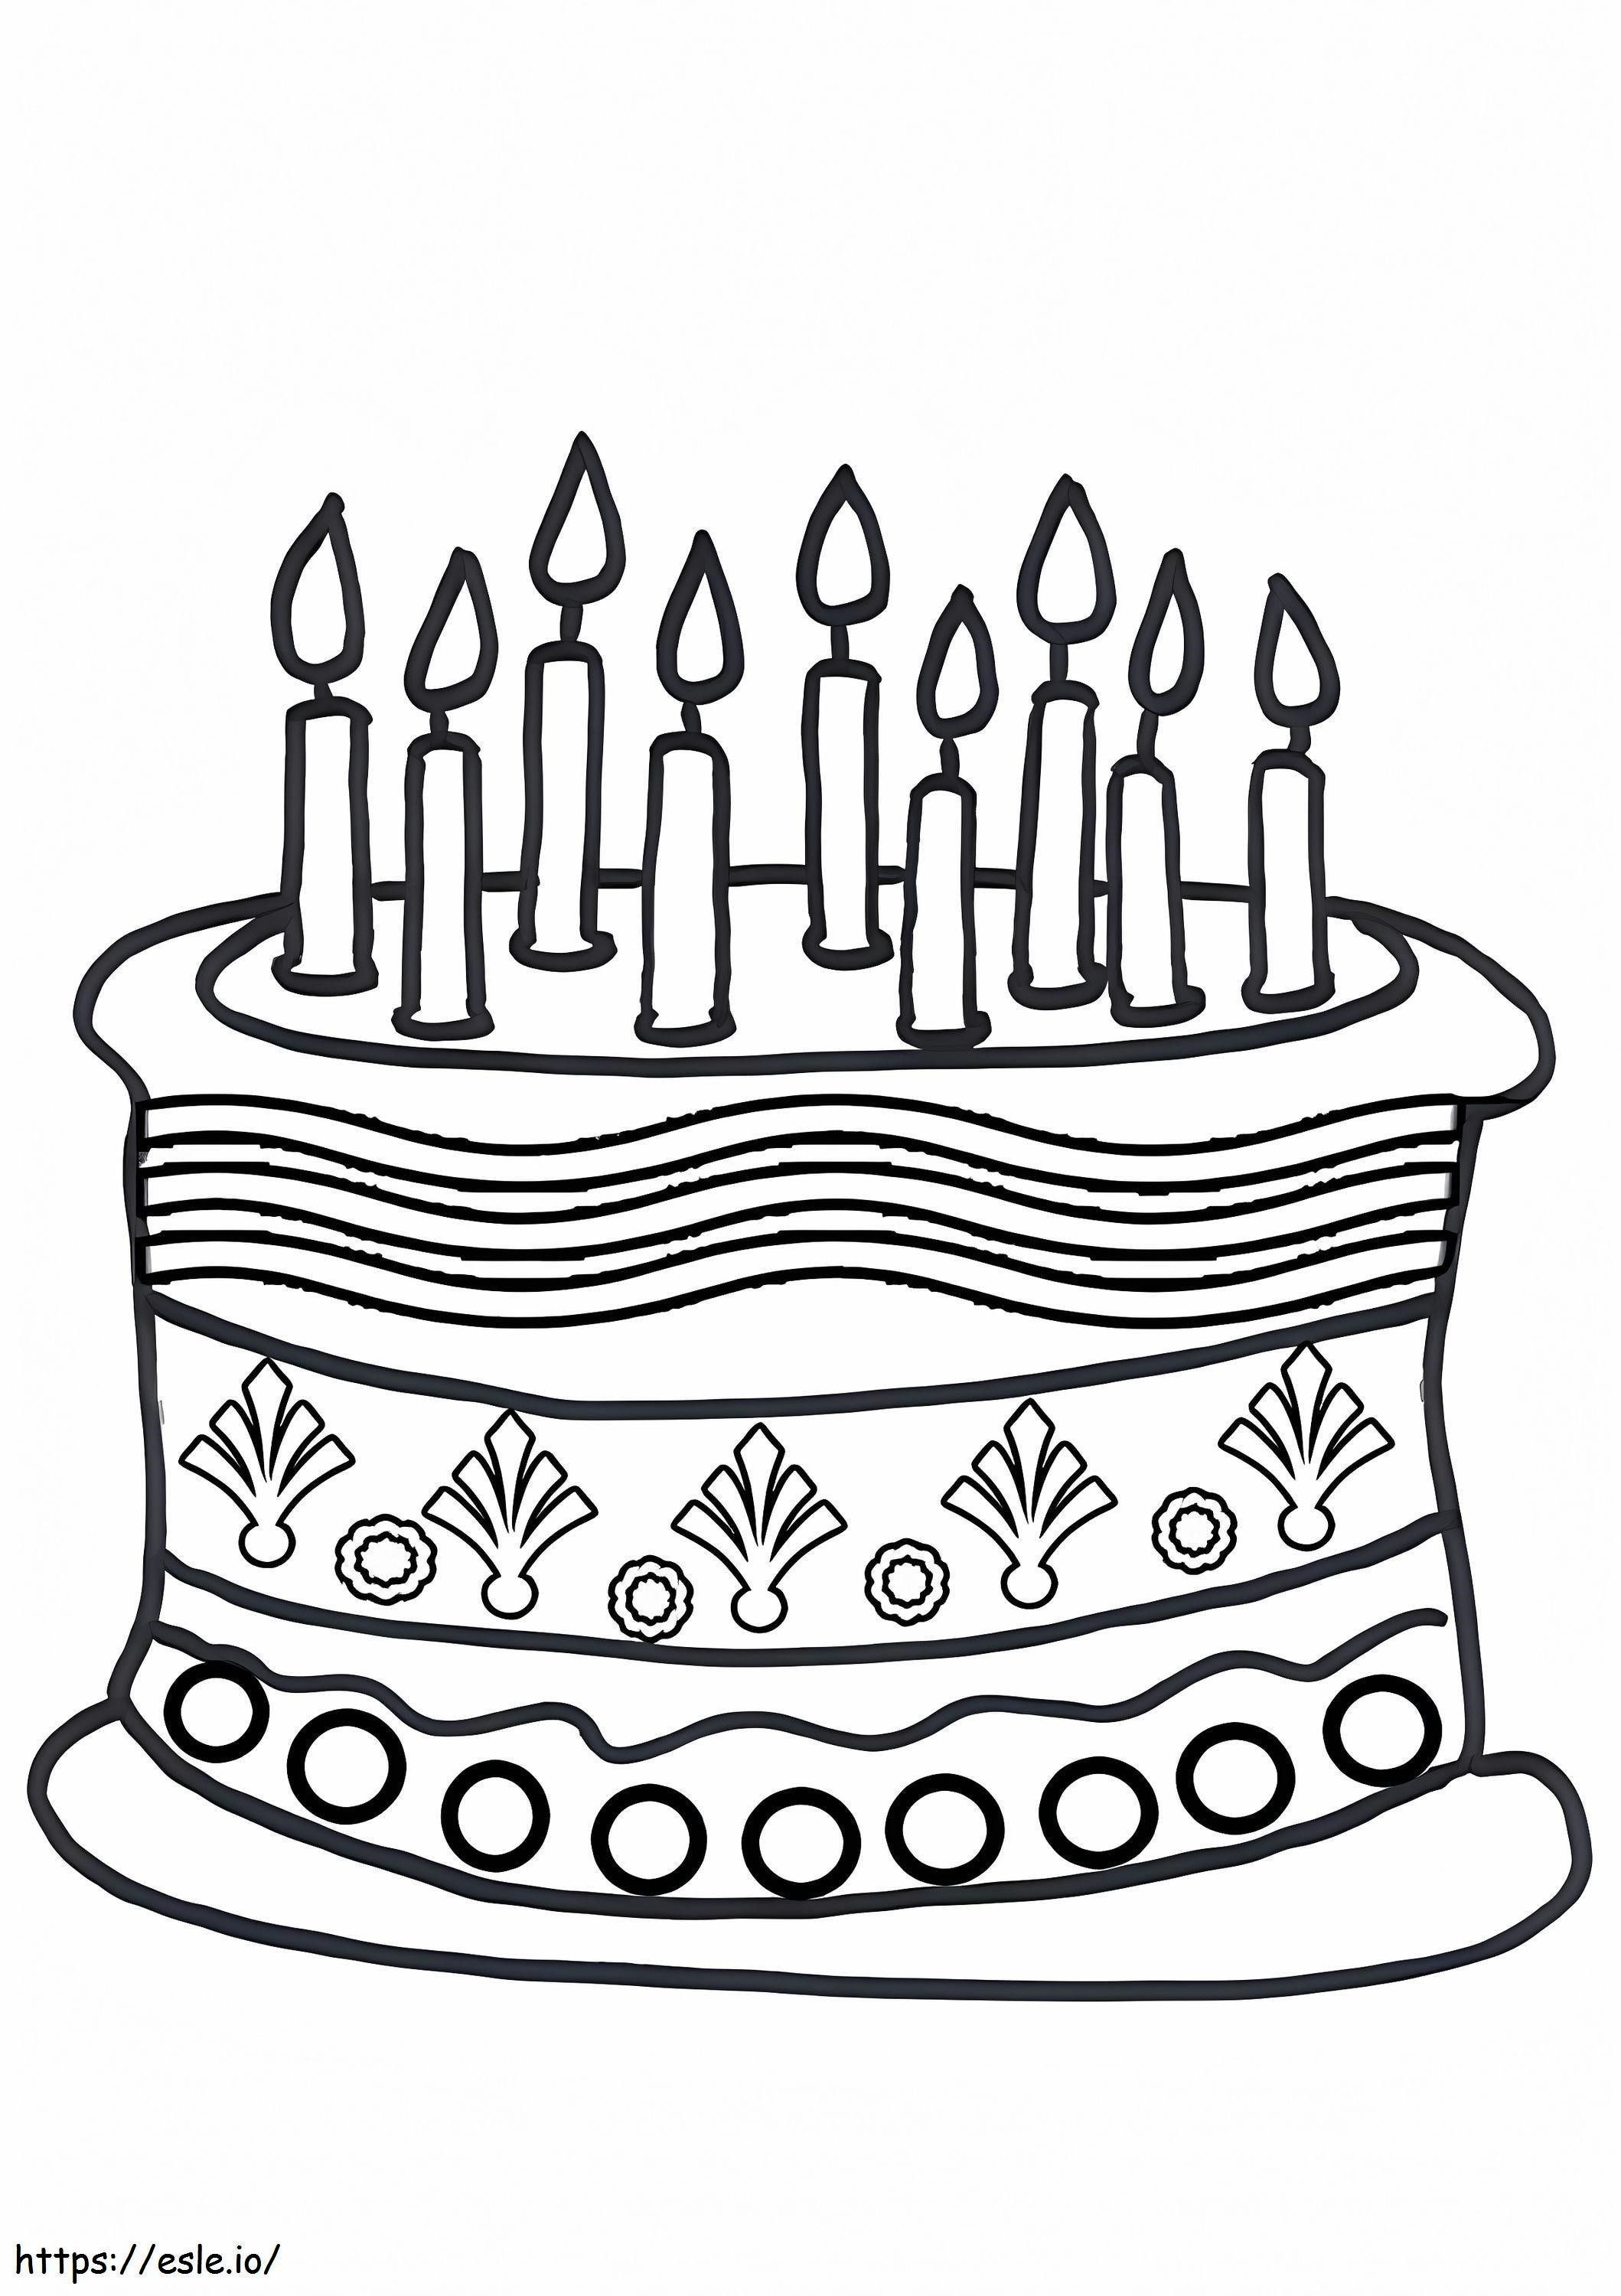 Coloriage Gâteau d'anniversaire à imprimer dessin